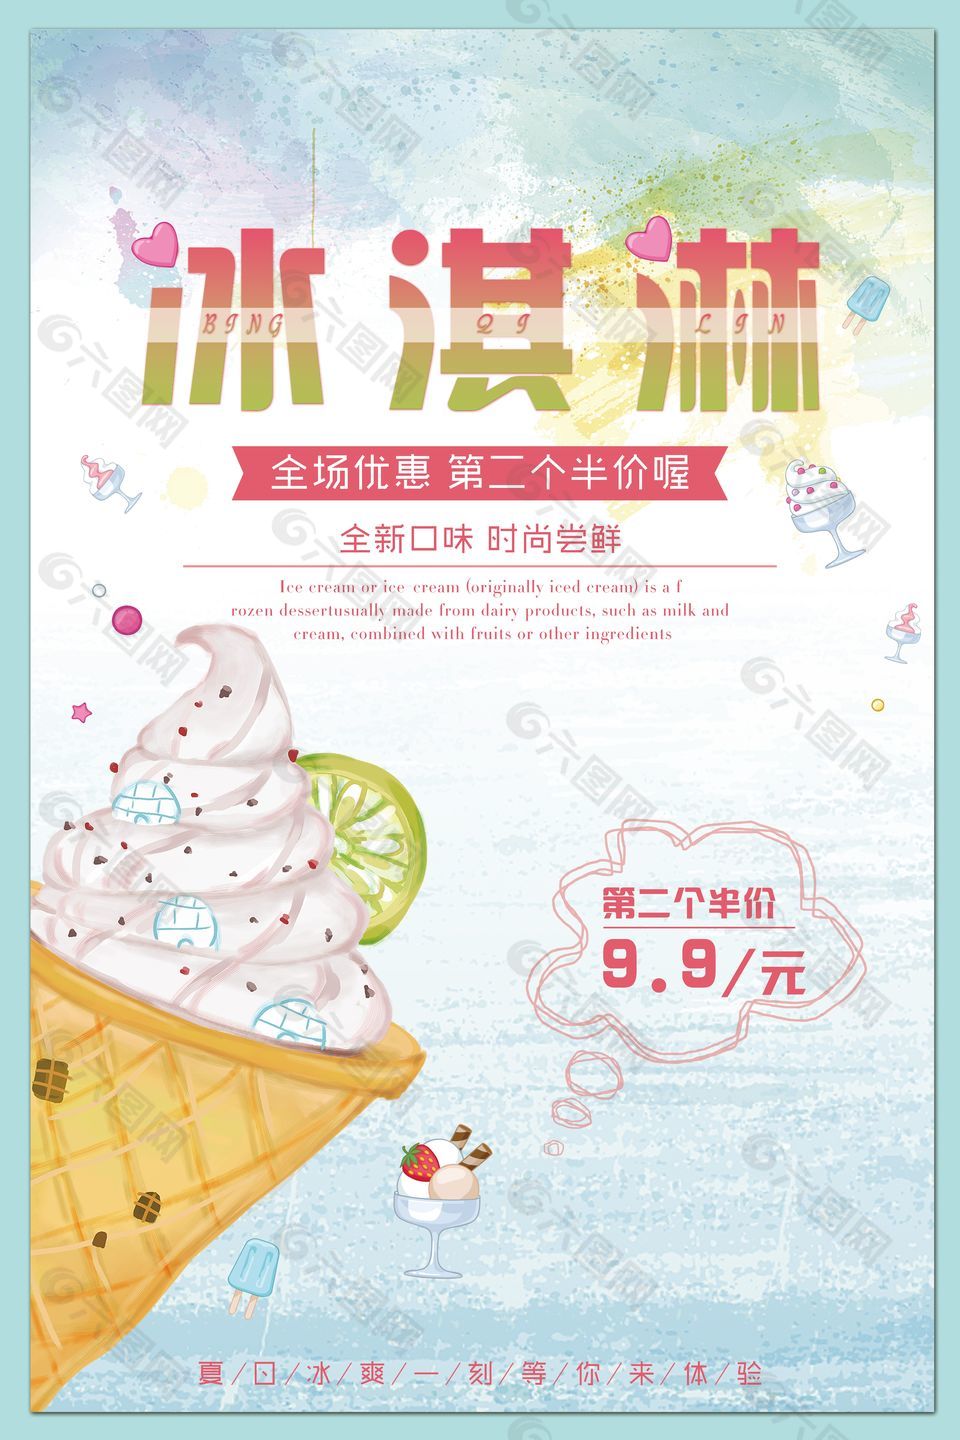 小清新冰淇淋彩色渐变主题海报设计